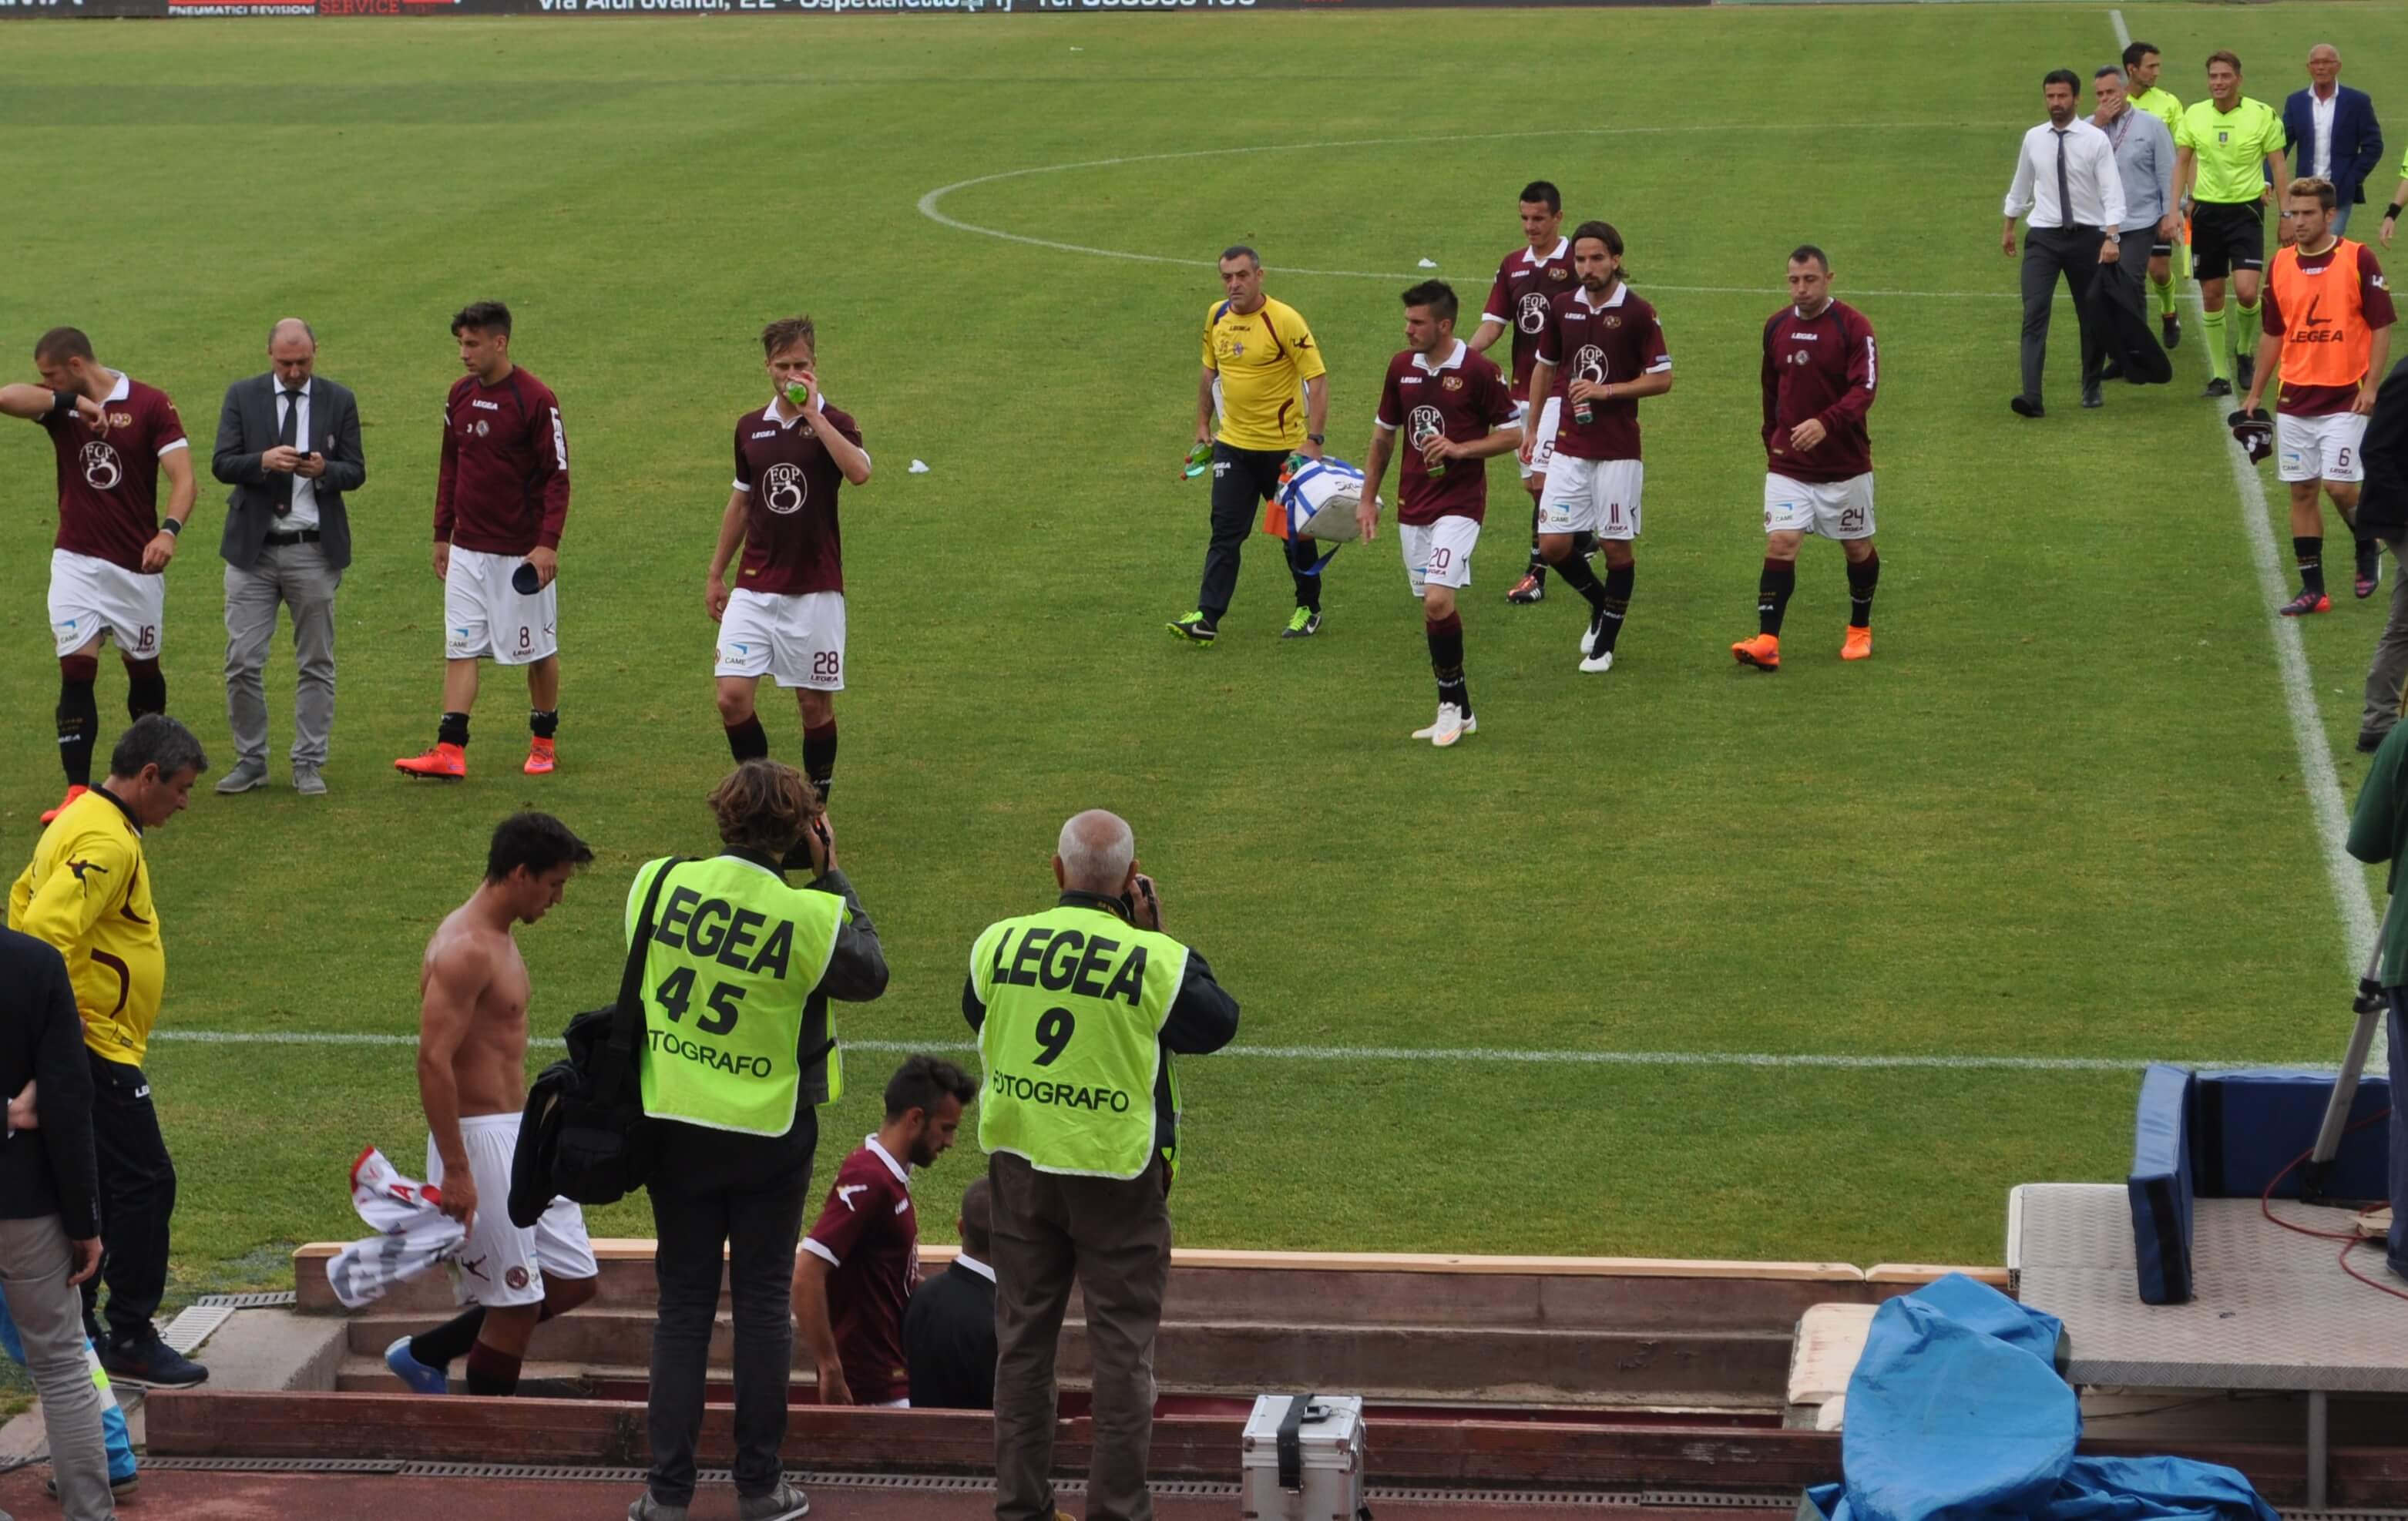 #IDAHOT: i calciatori del Livorno scendono in campo contro l'omofobia